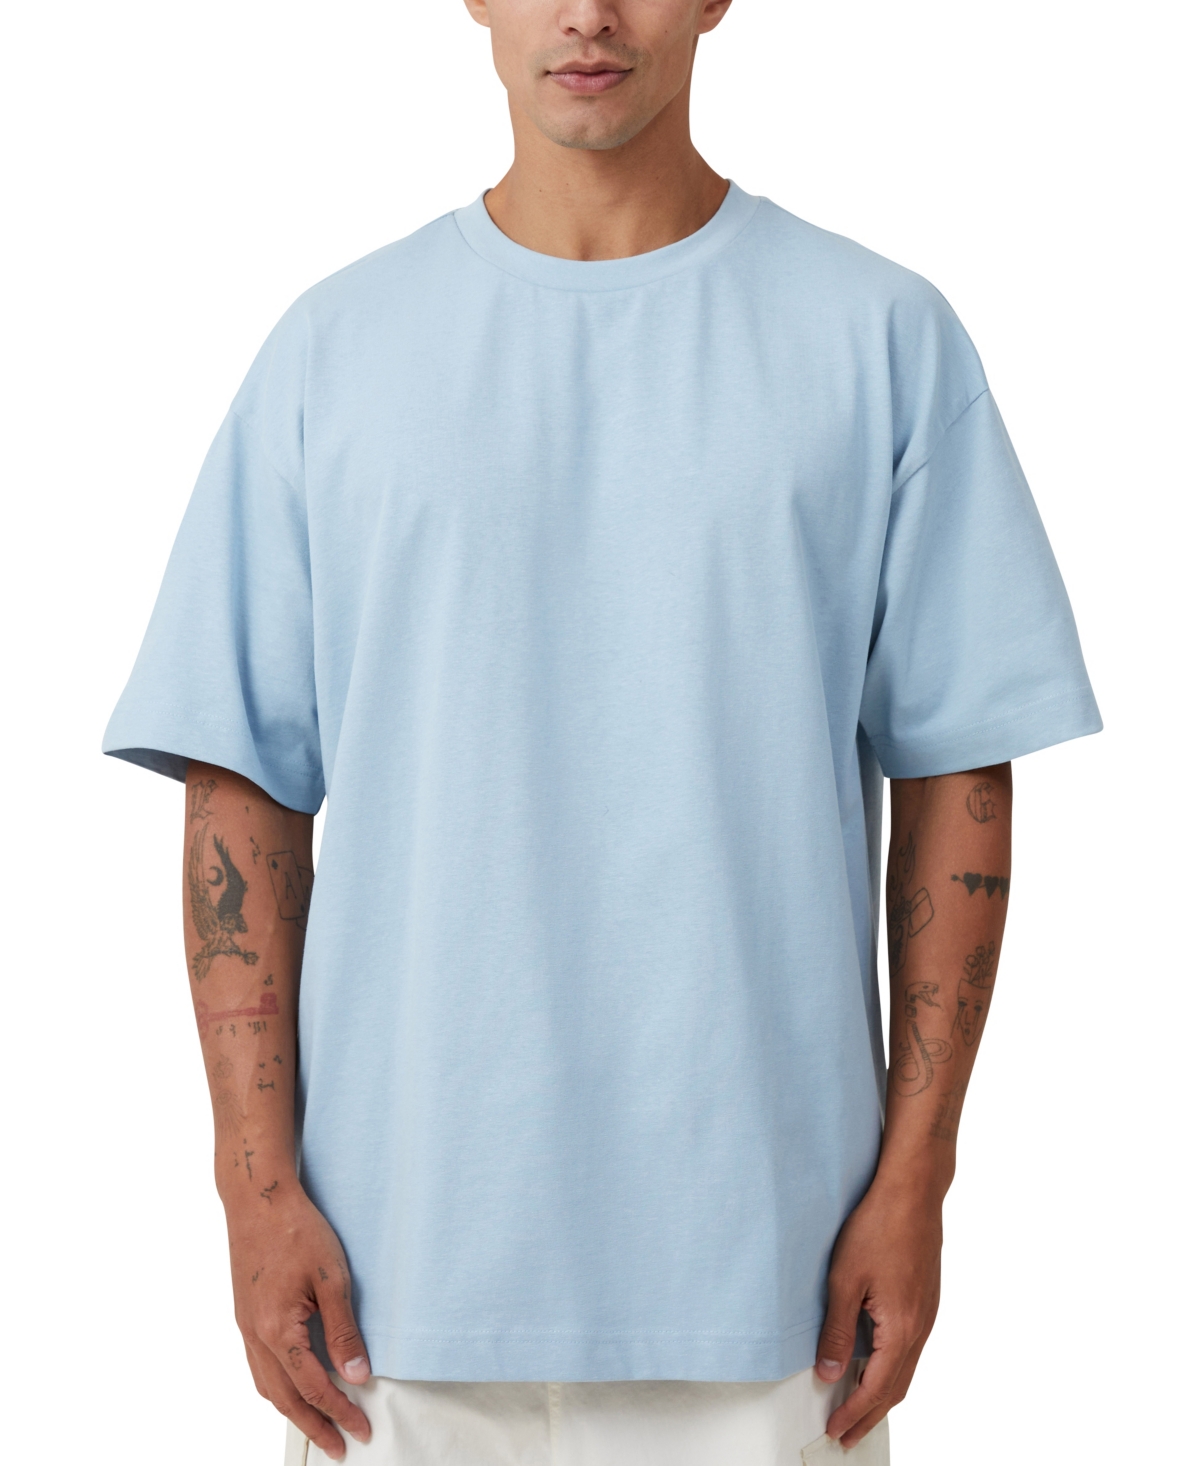 Men's Box Fit Plain T-Shirt - Blue